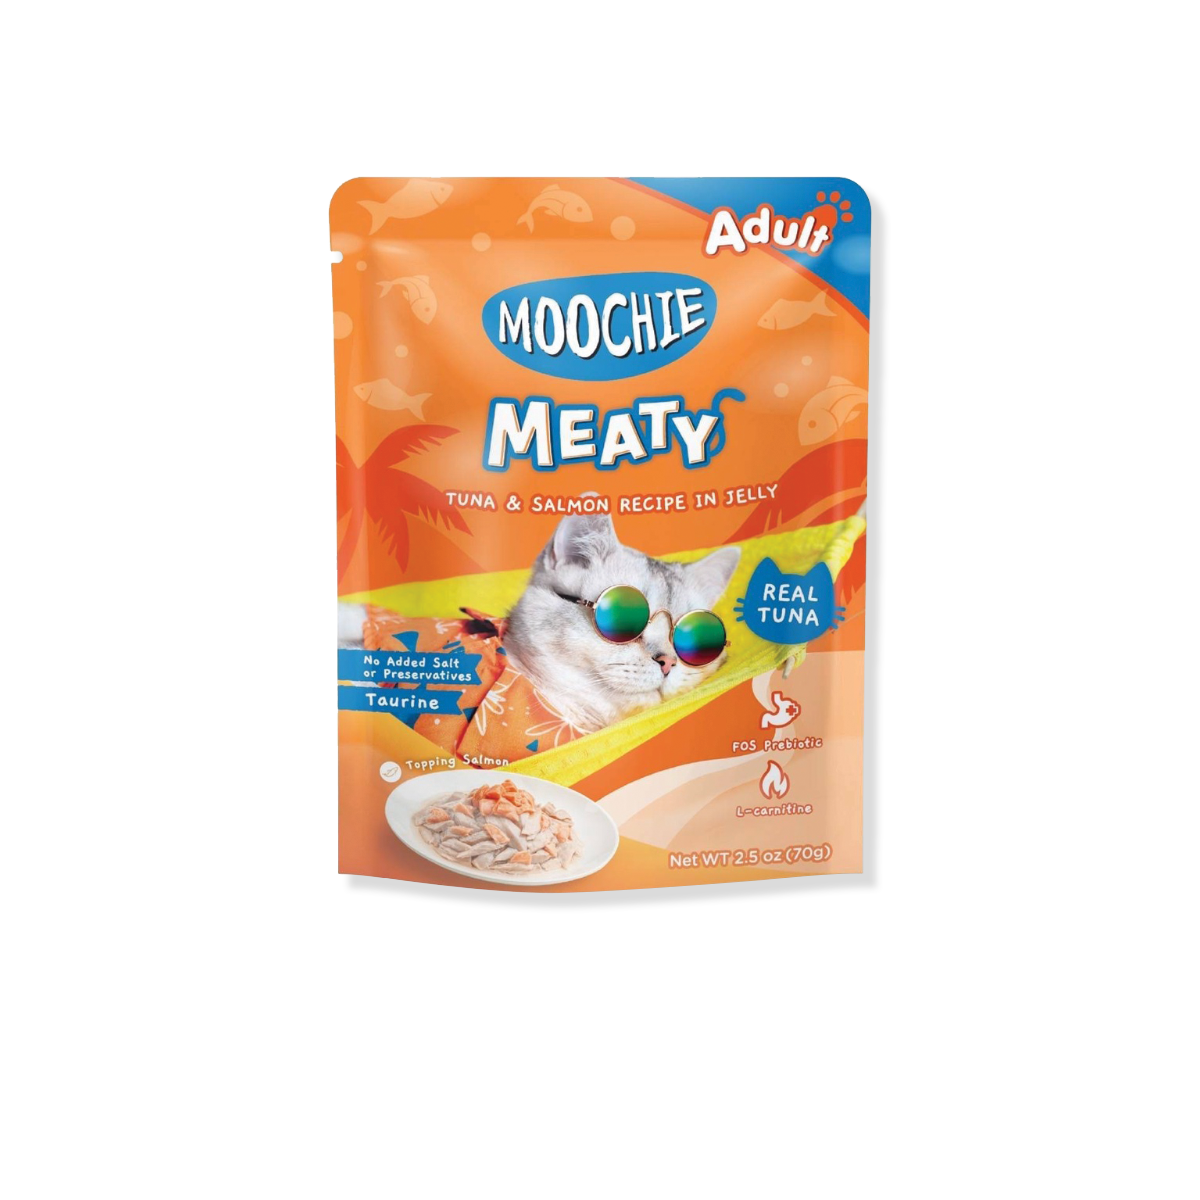 MOOCHIE Meaty Tuna & Slamon Recipe in jelly Adult มูชี่ มีทตี้ อาหารเปียกแมว รสทูน่าและแซลมอนในเยลลี่ ขนาด 70 กรัม (12 ซอง)